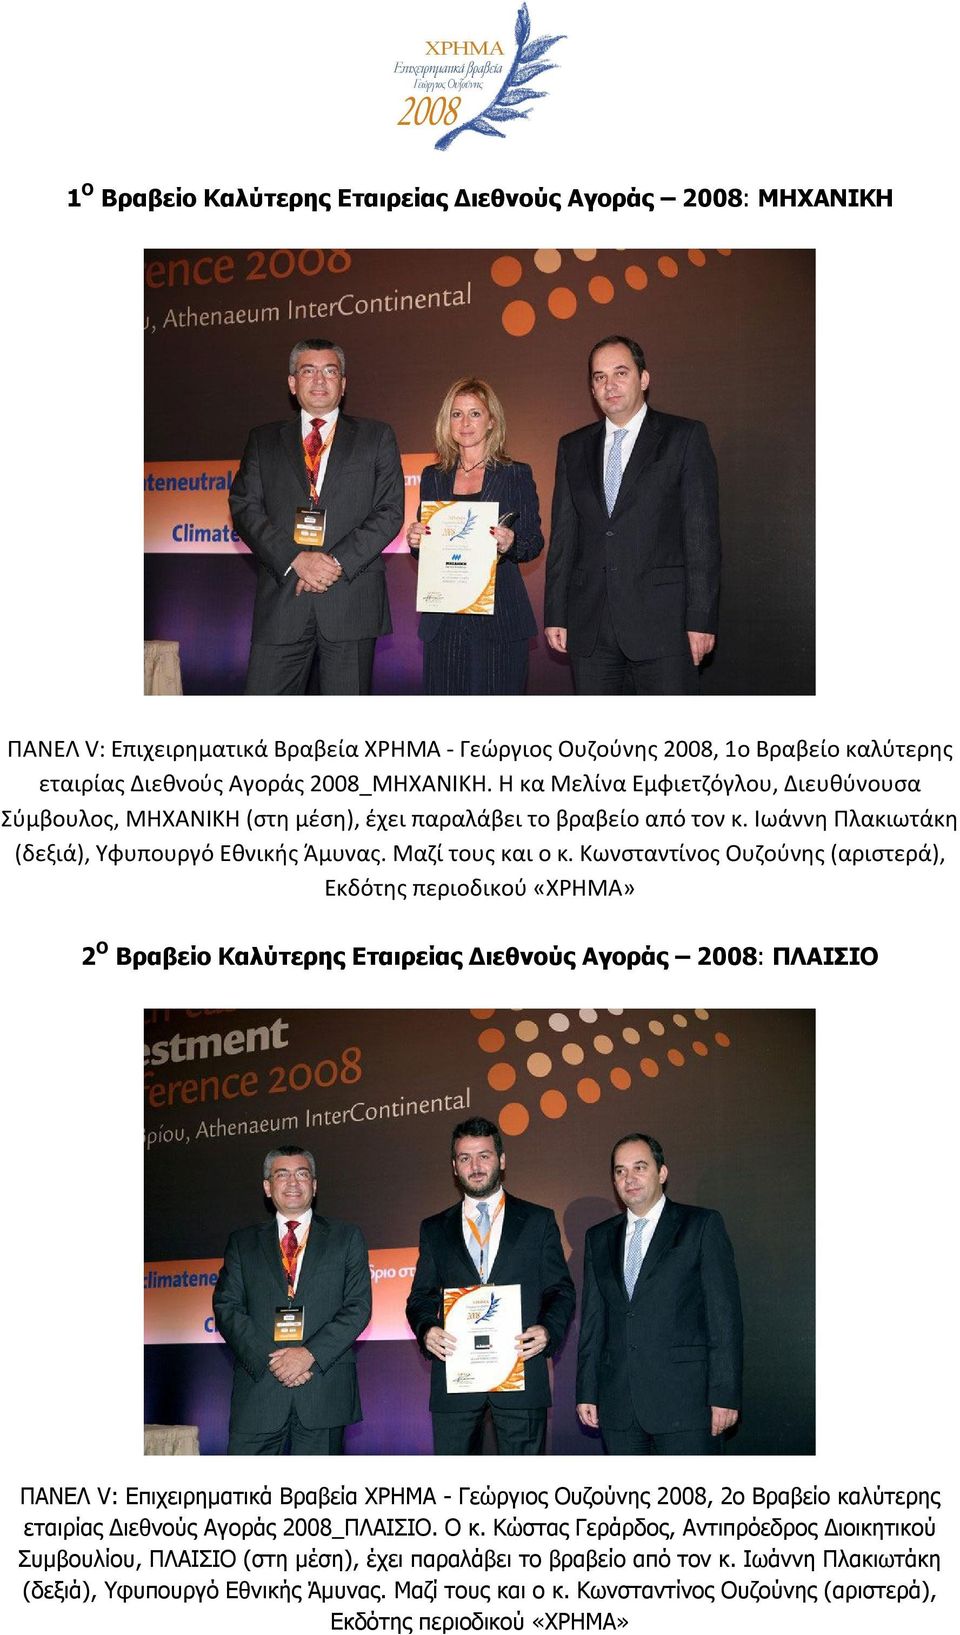 Κωνσταντίνος Ουζούνης (αριστερά), Εκδότης περιοδικού «ΧΡΗΜΑ» 2 Ο Βραβείο Καλύτερης Εταιρείας Διεθνούς Αγοράς 2008: ΠΛΑΙΣΙΟ ΠΑΝΕΛ V: Επιχειρηματικά Βραβεία ΧΡΗΜΑ - Γεώργιος Ουζούνης 2008, 2ο Βραβείο